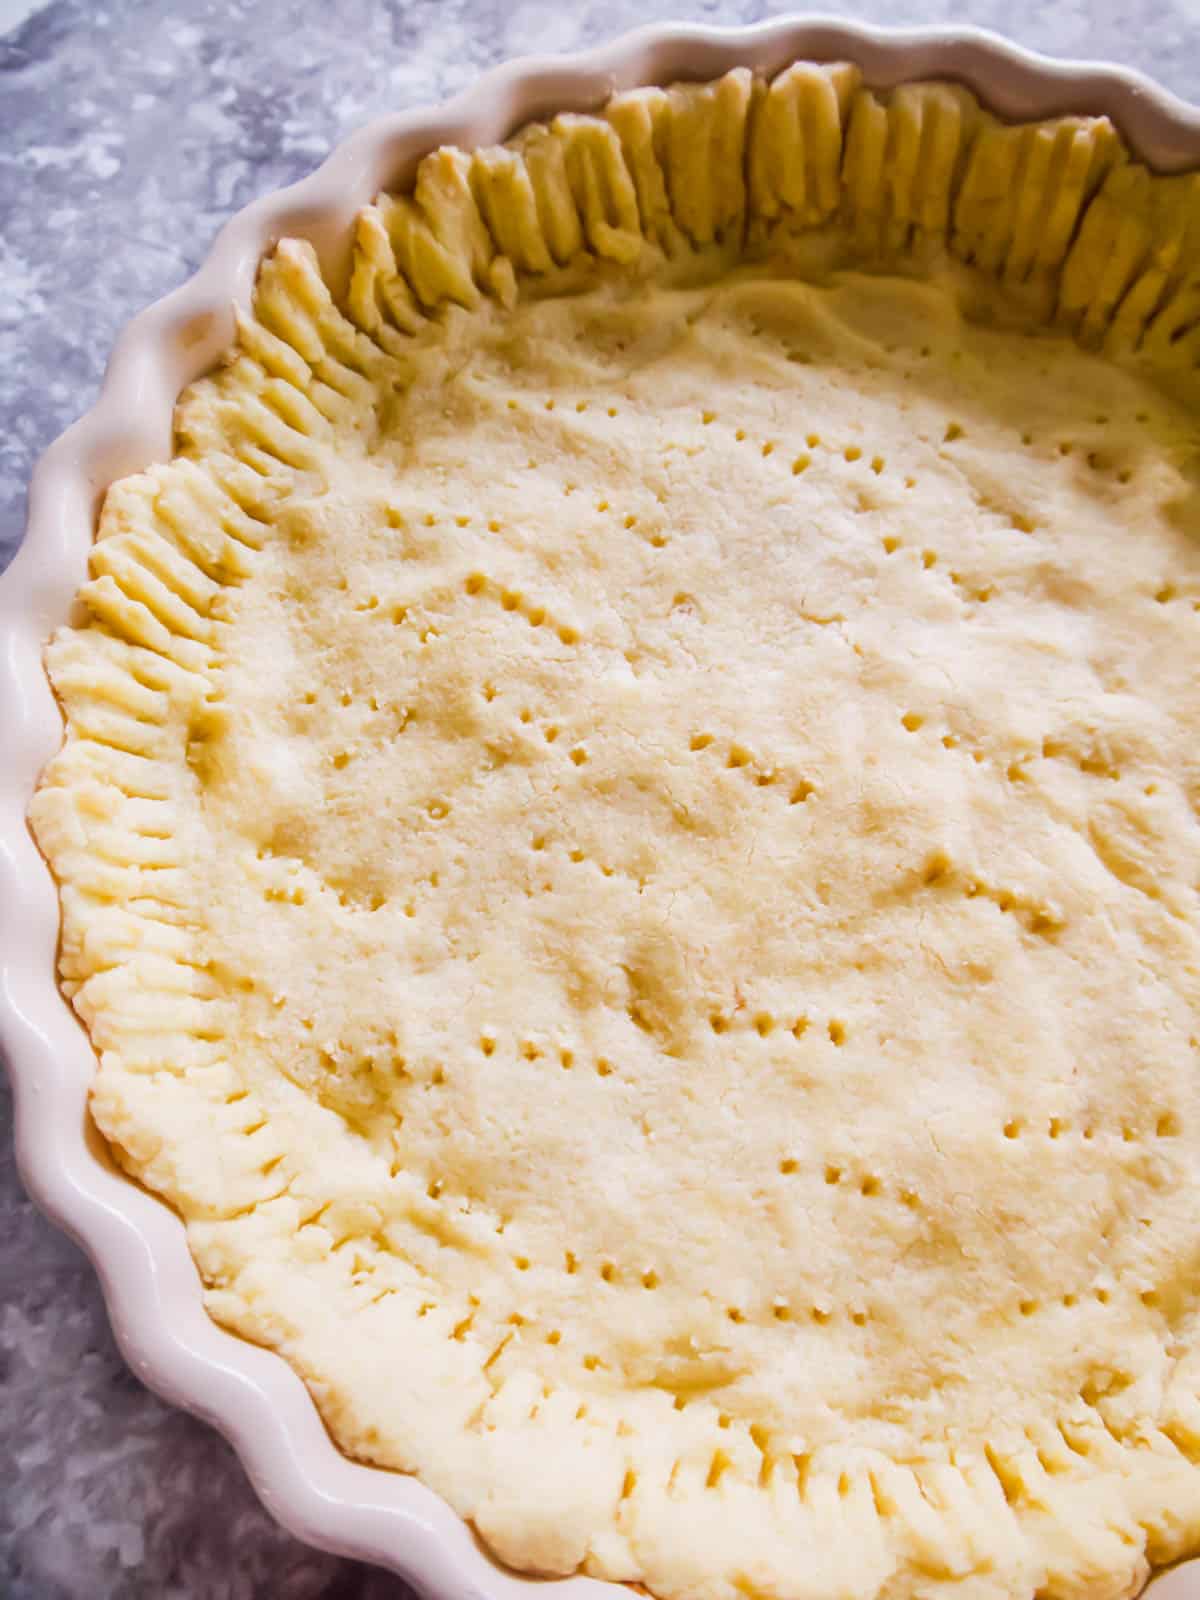 Paleo pie crust in a pan.